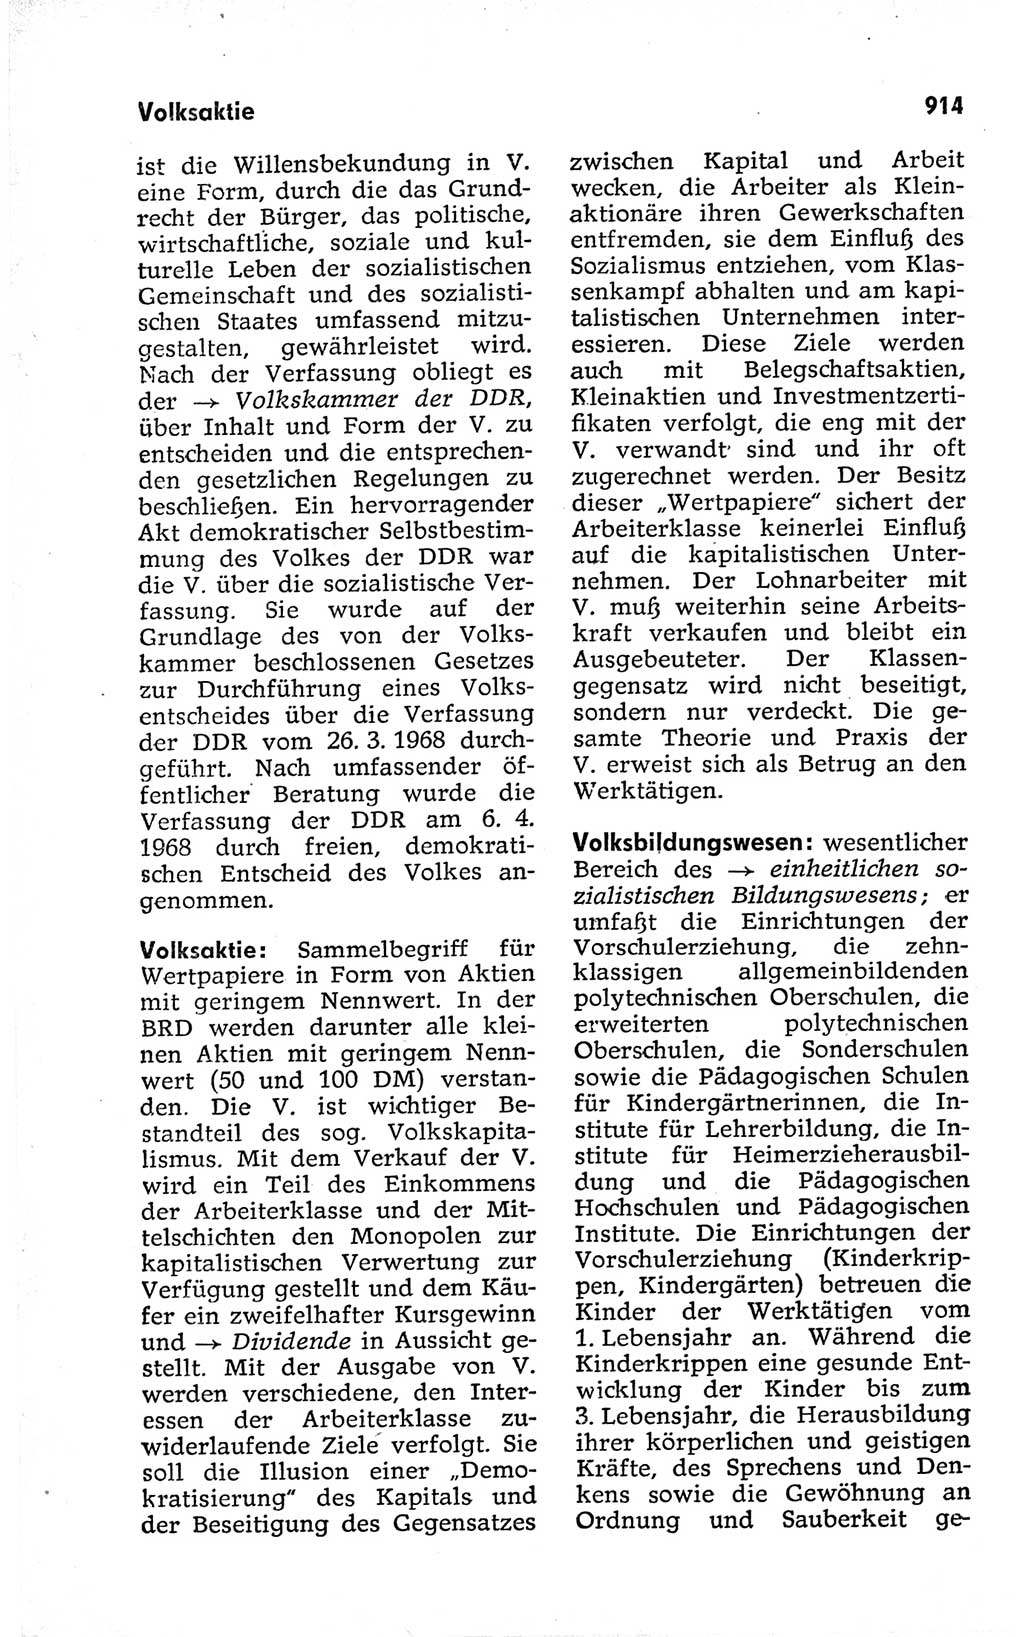 Kleines politisches Wörterbuch [Deutsche Demokratische Republik (DDR)] 1973, Seite 914 (Kl. pol. Wb. DDR 1973, S. 914)